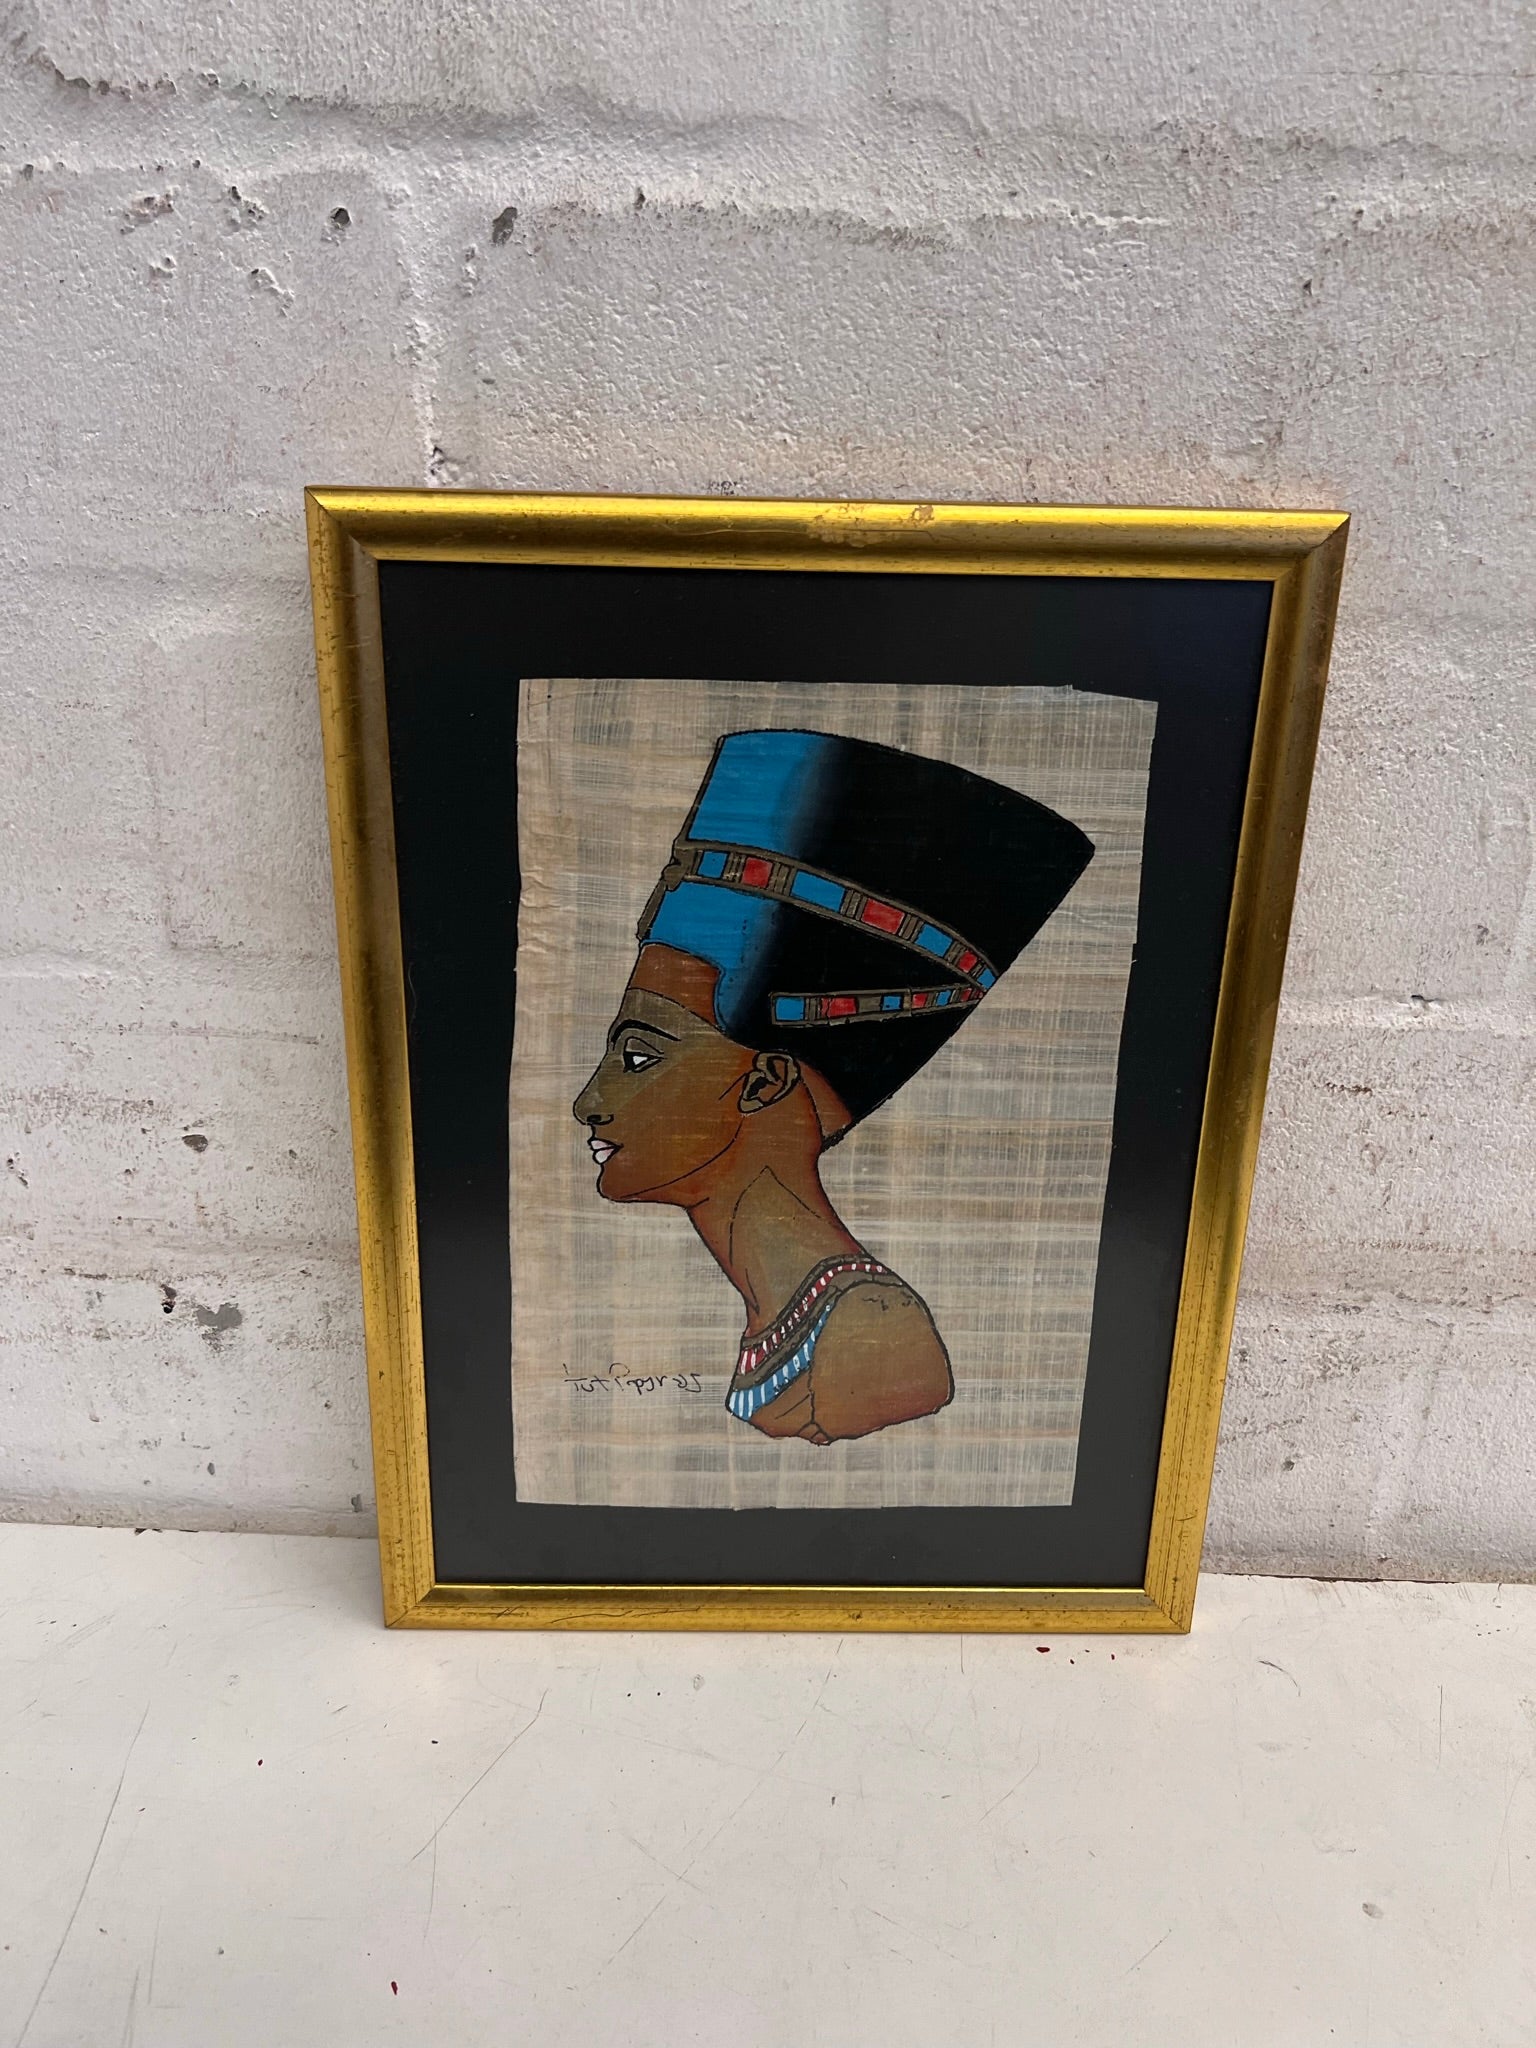 Gold Framed Egyptian Art - no glass